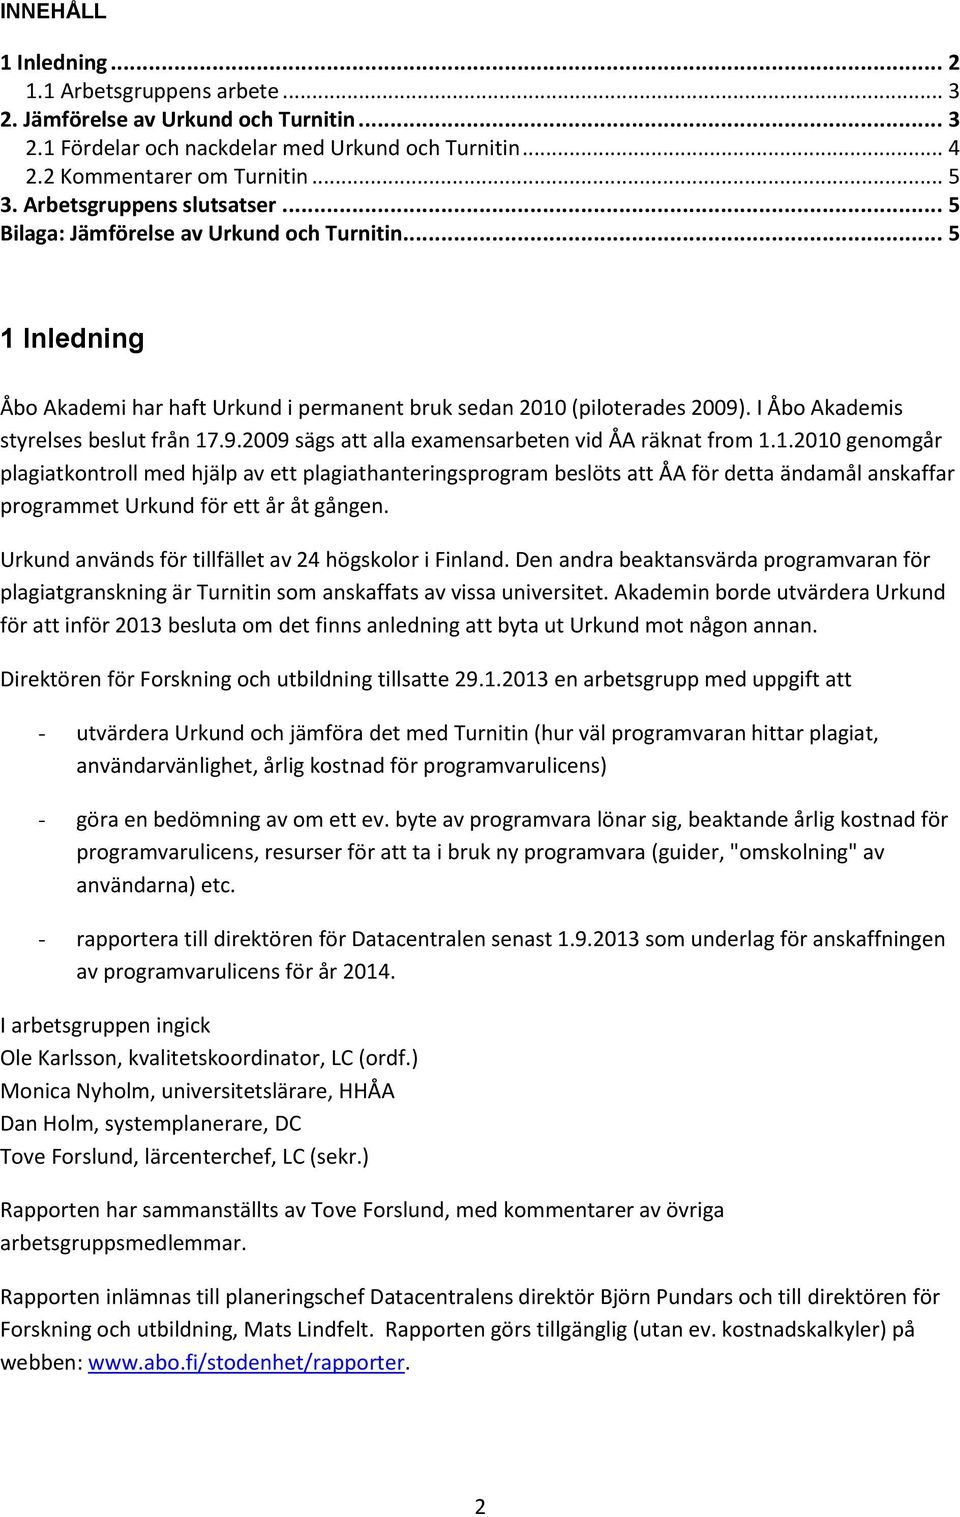 I Åbo Akademis styrelses beslut från 17.9.2009 sägs att alla examensarbeten vid ÅA räknat from 1.1.2010 genomgår plagiatkontroll med hjälp av ett plagiathanteringsprogram beslöts att ÅA för detta ändamål anskaffar programmet Urkund för ett år åt gången.